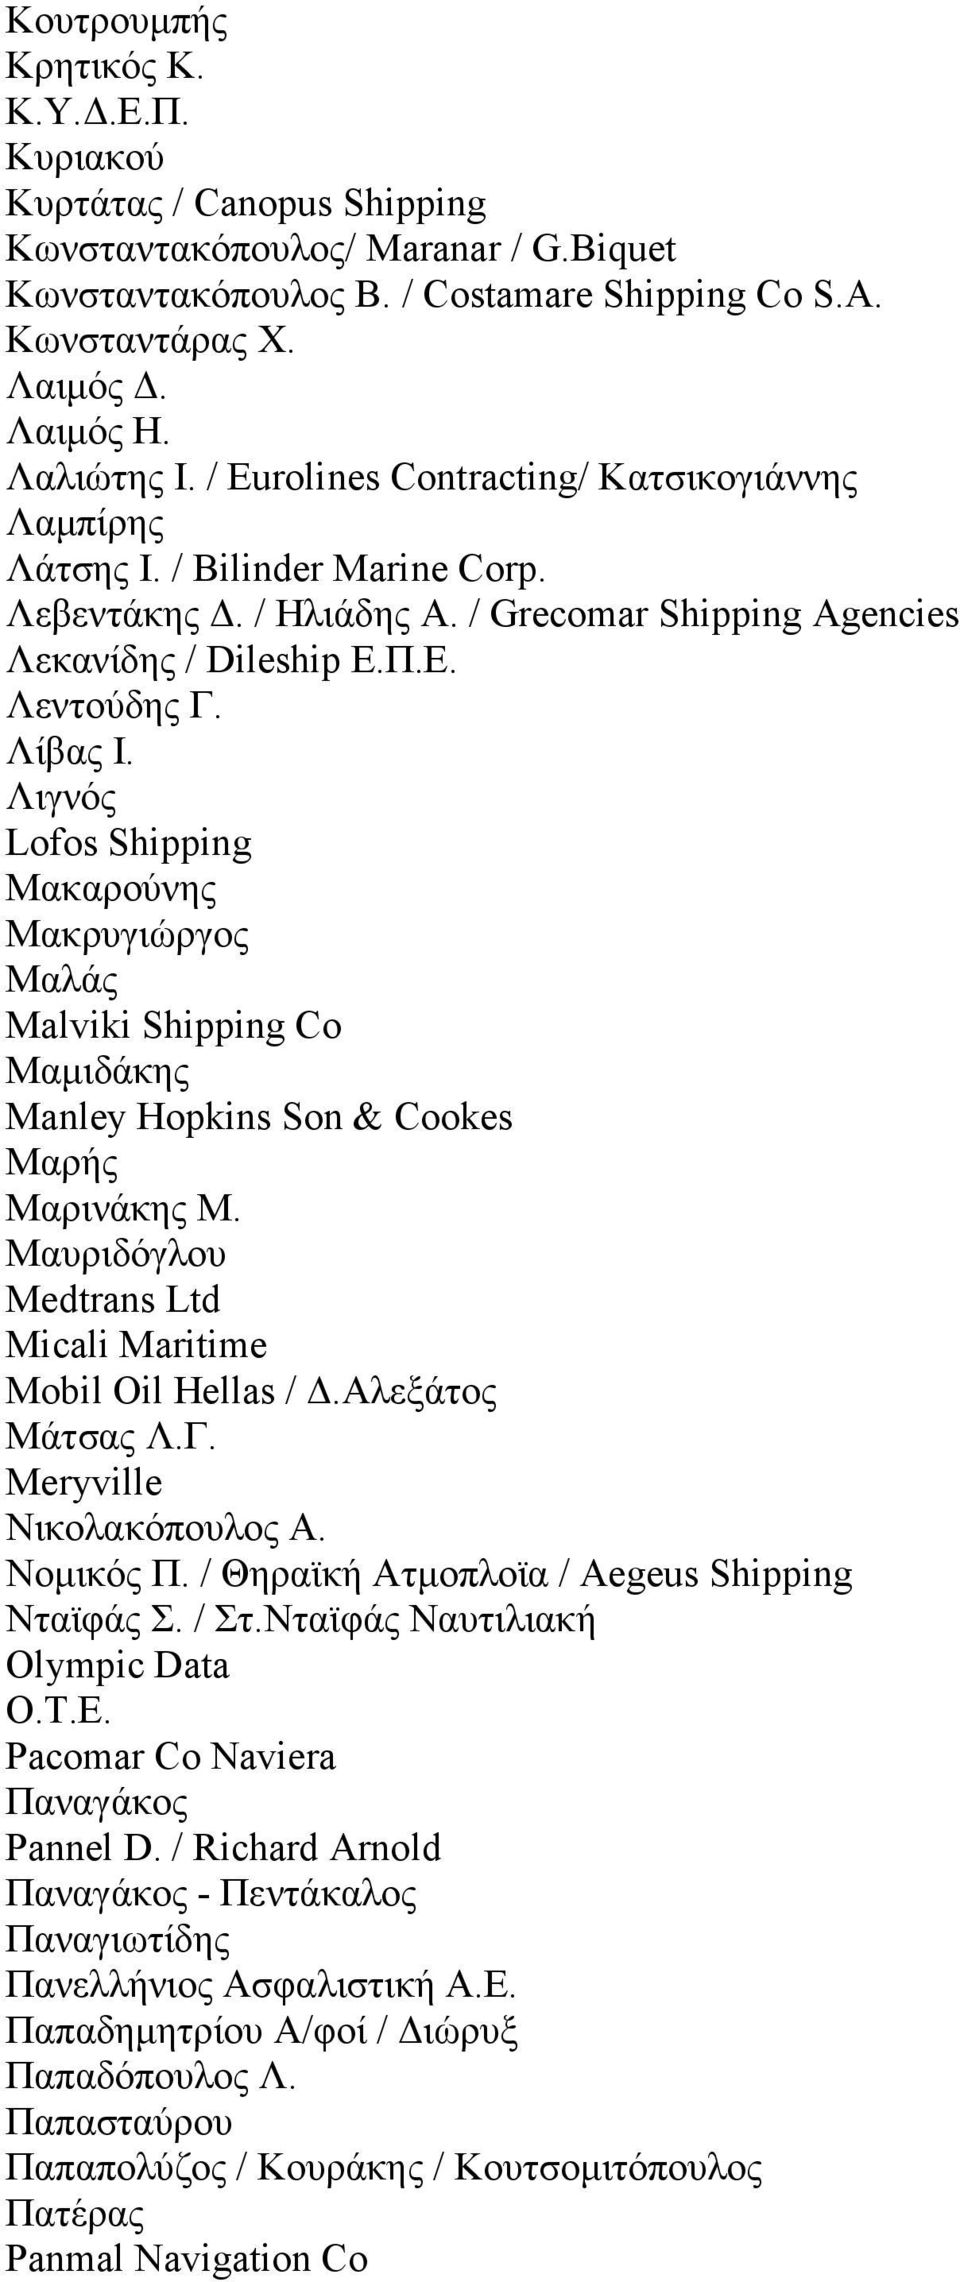 Λιγνός Lofos Shipping Μακαρούνης Μακρυγιώργος Μαλάς Malviki Shipping Co Μαµιδάκης Manley Hopkins Son & Cookes Μαρής Μαρινάκης Μ. Μαυριδόγλου Medtrans Ltd Micali Maritime Mobil Oil Hellas /.